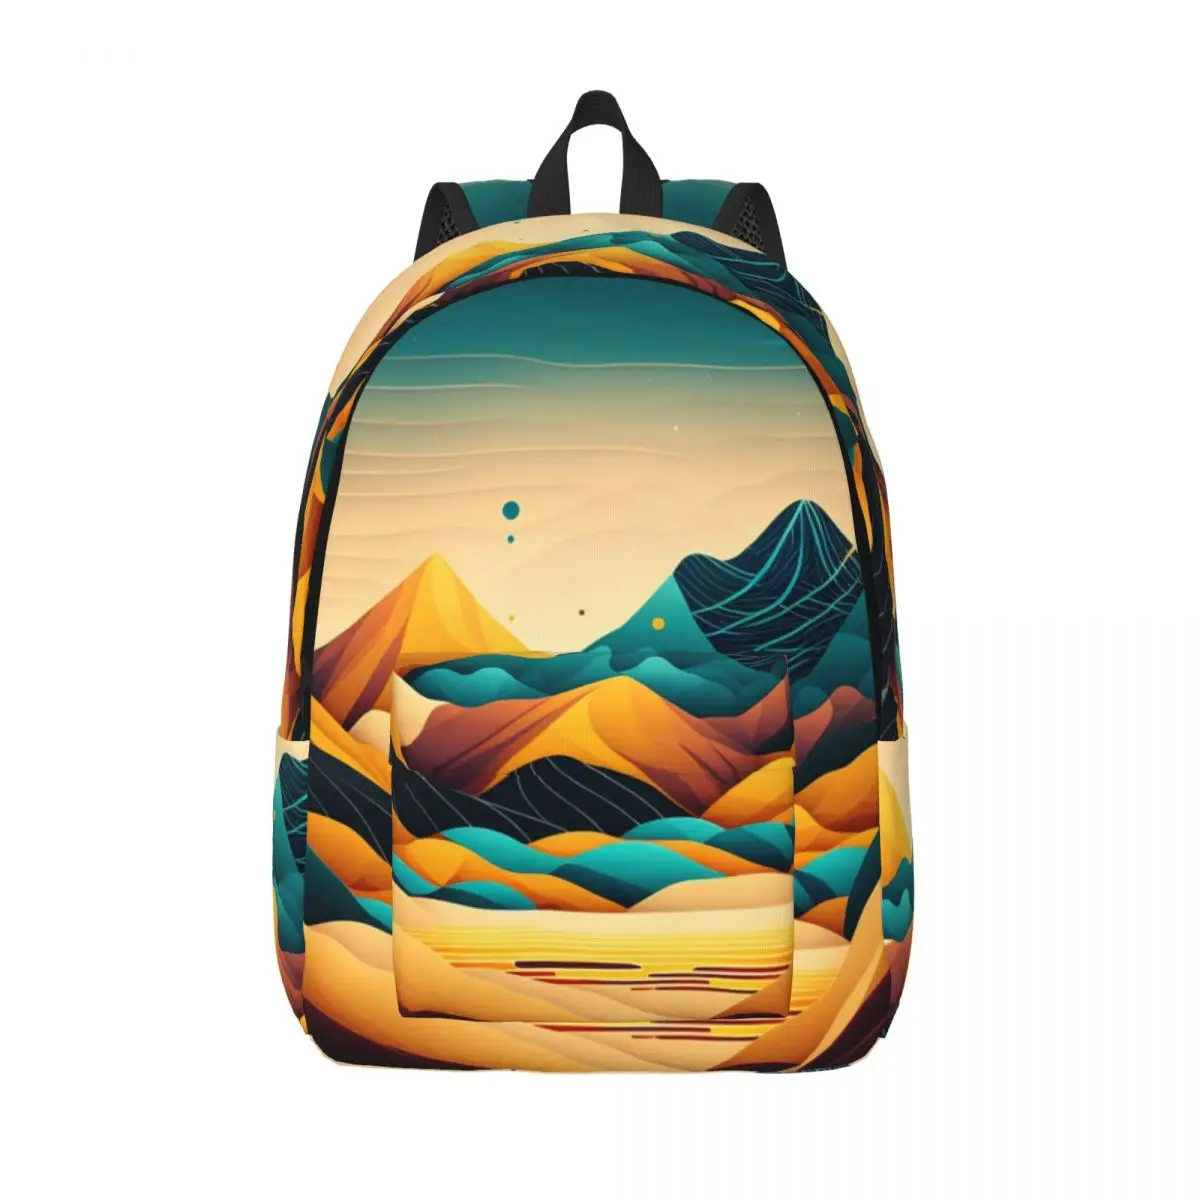 

Рюкзак с принтом пустыни, Молодежный пейзаж, большие рюкзаки, полиэстер, классные школьные ранцы, дорожный дизайнерский рюкзак